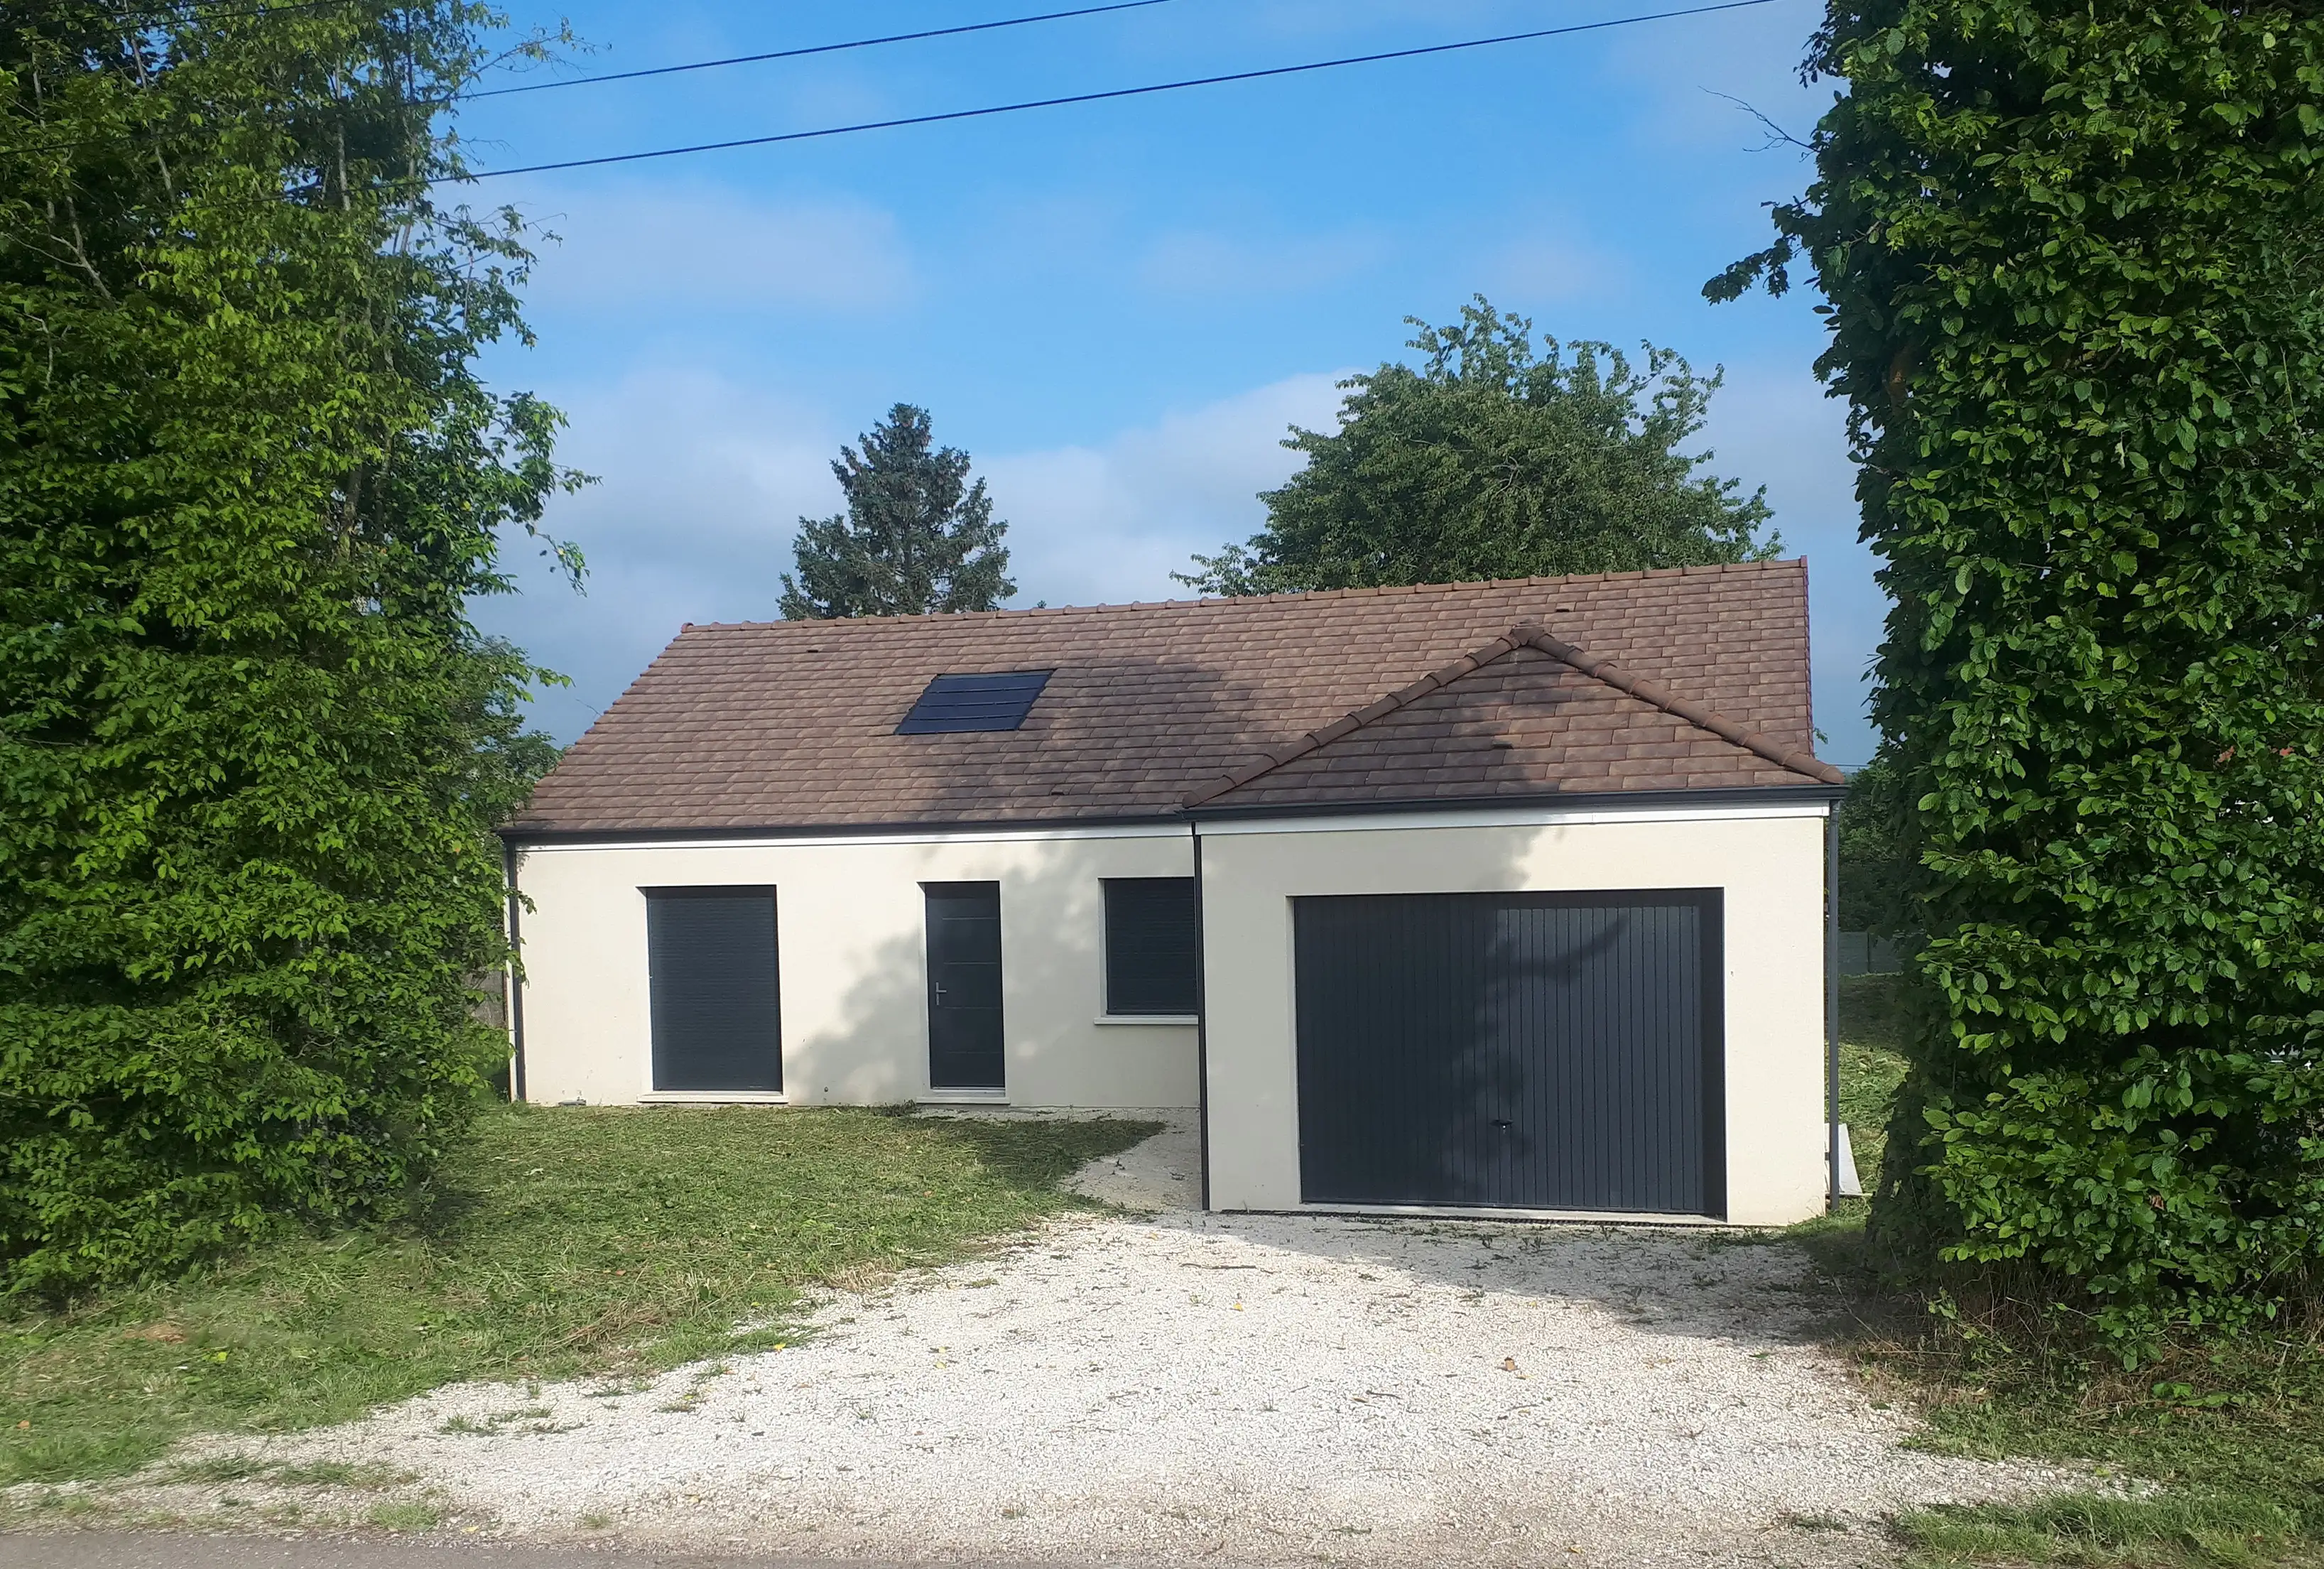 Image exclus Exclusivité immobilière de 600 m² à Vinneuf (89)